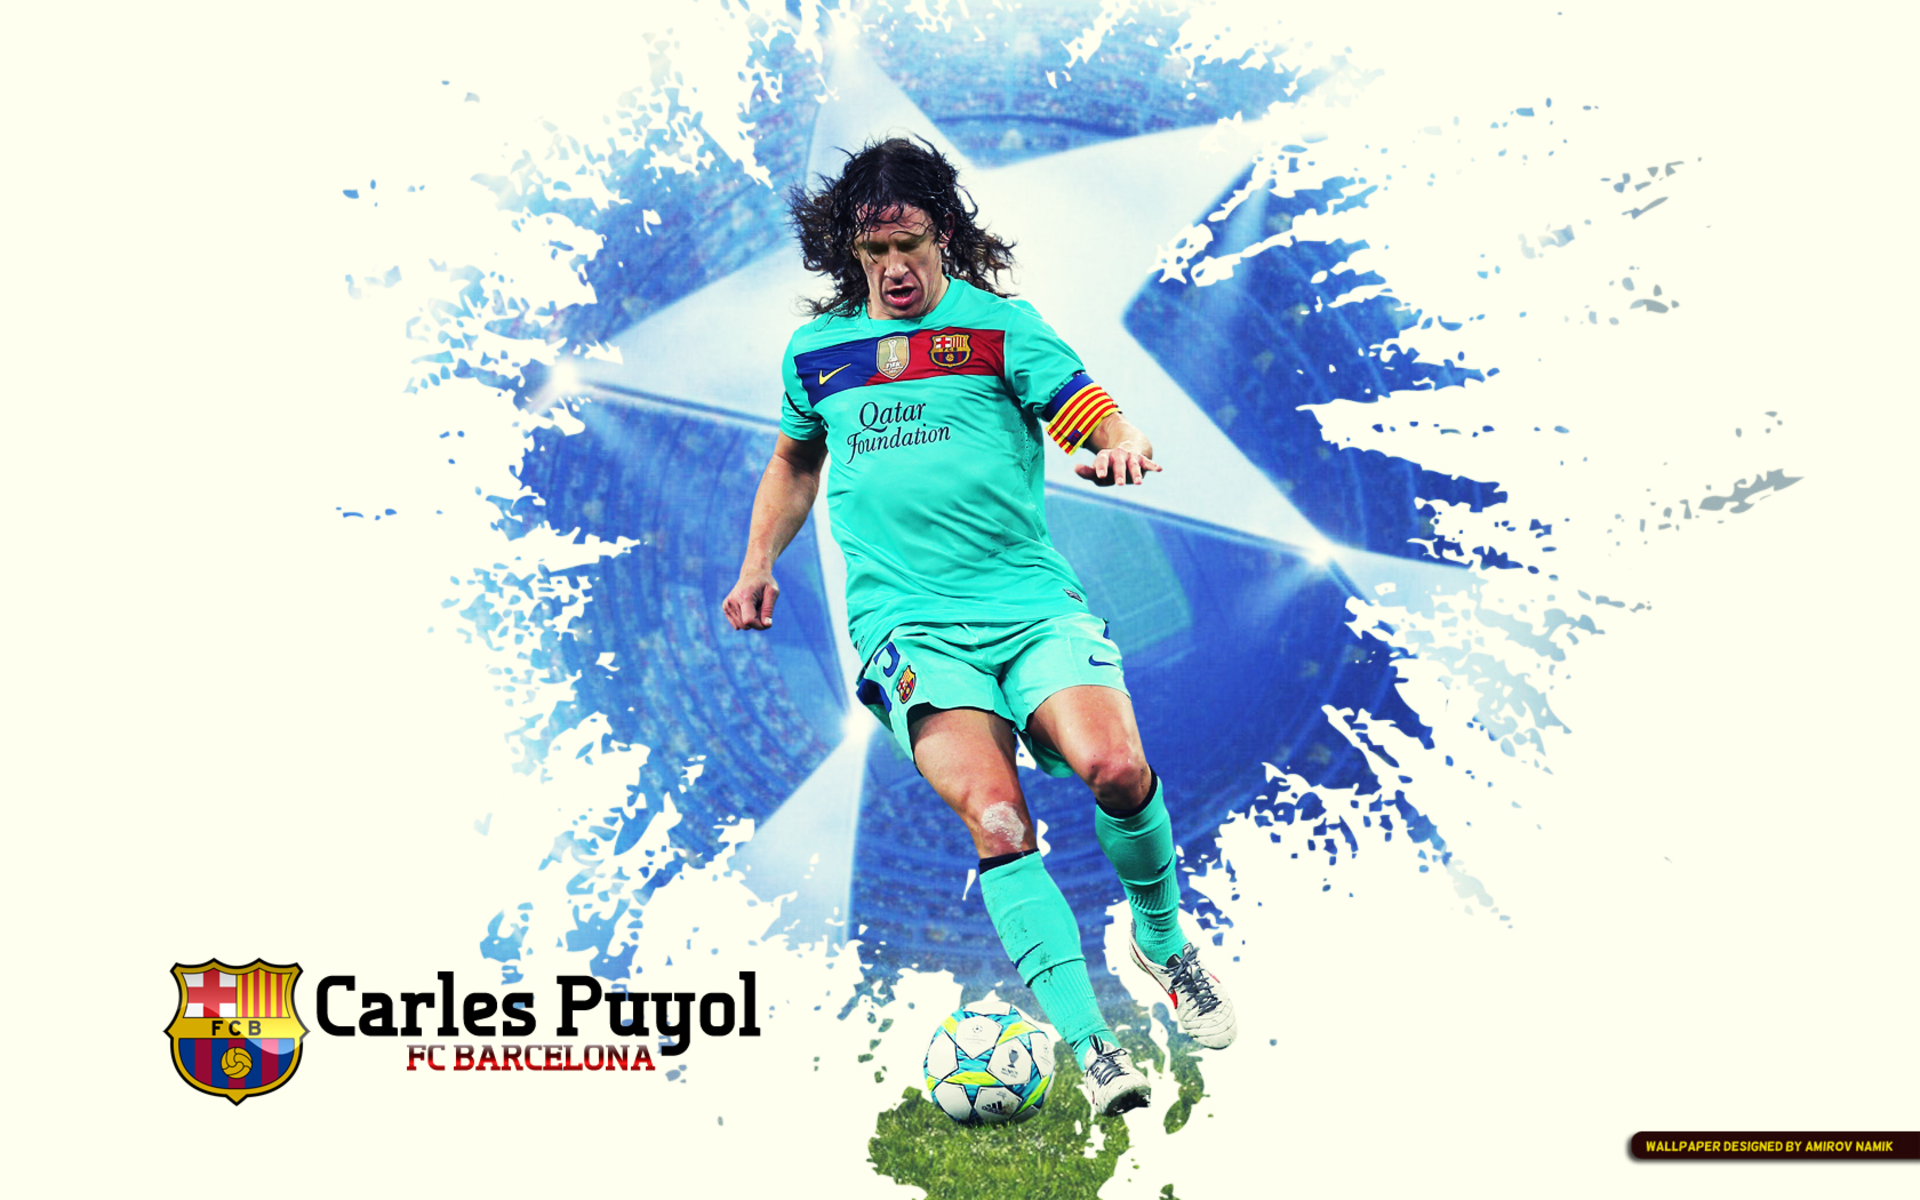 Carles Puyol Wallpapers